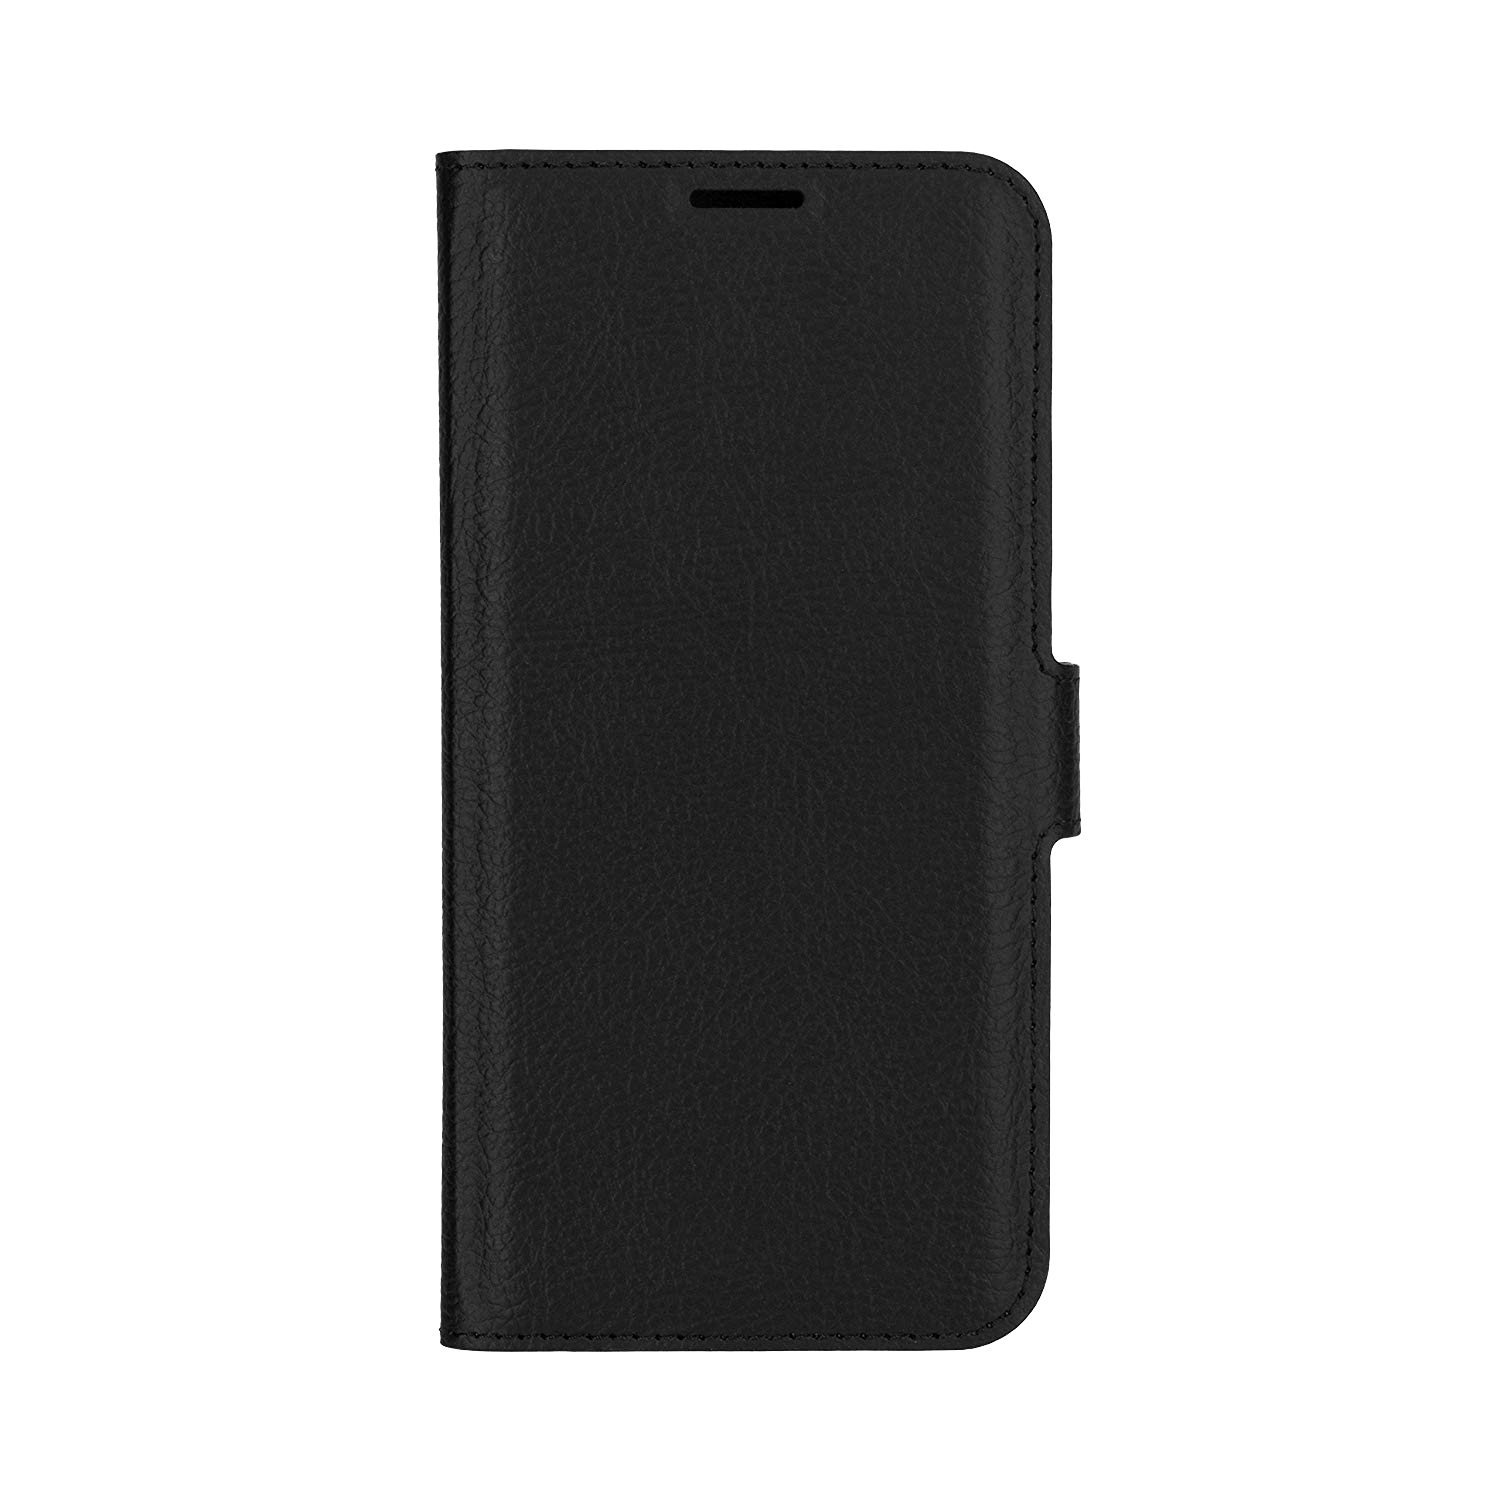 Xqisit Slim Wallet Selection Hülle Case Für Samsung Galaxy S7 Schwarz Black - Onhe Vertrag